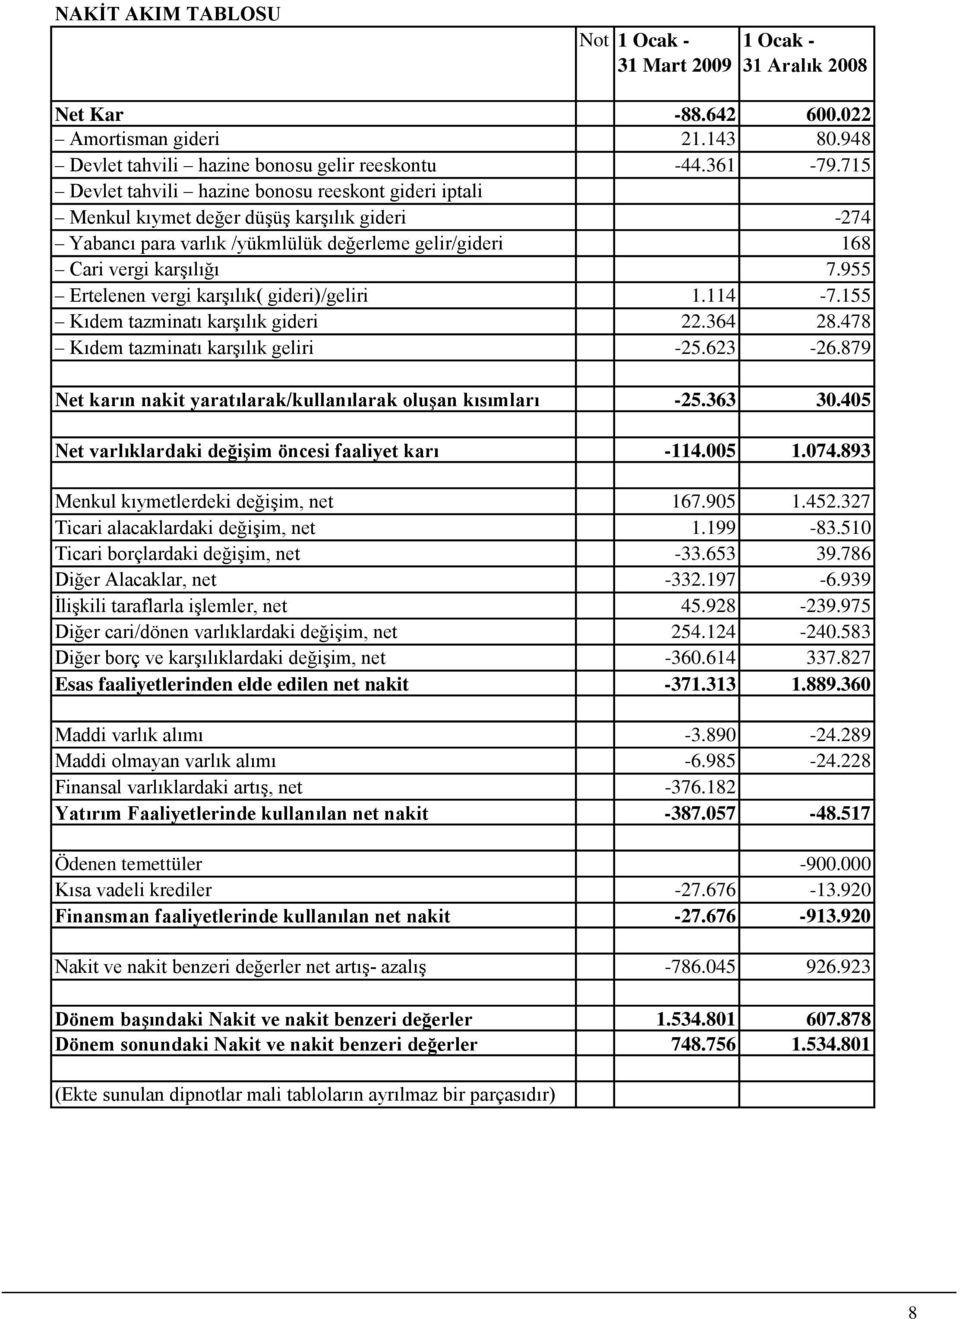 955 Ertelenen vergi karşılık( gideri)/geliri 1.114-7.155 Kıdem tazminatı karşılık gideri 22.364 28.478 Kıdem tazminatı karşılık geliri -25.623-26.